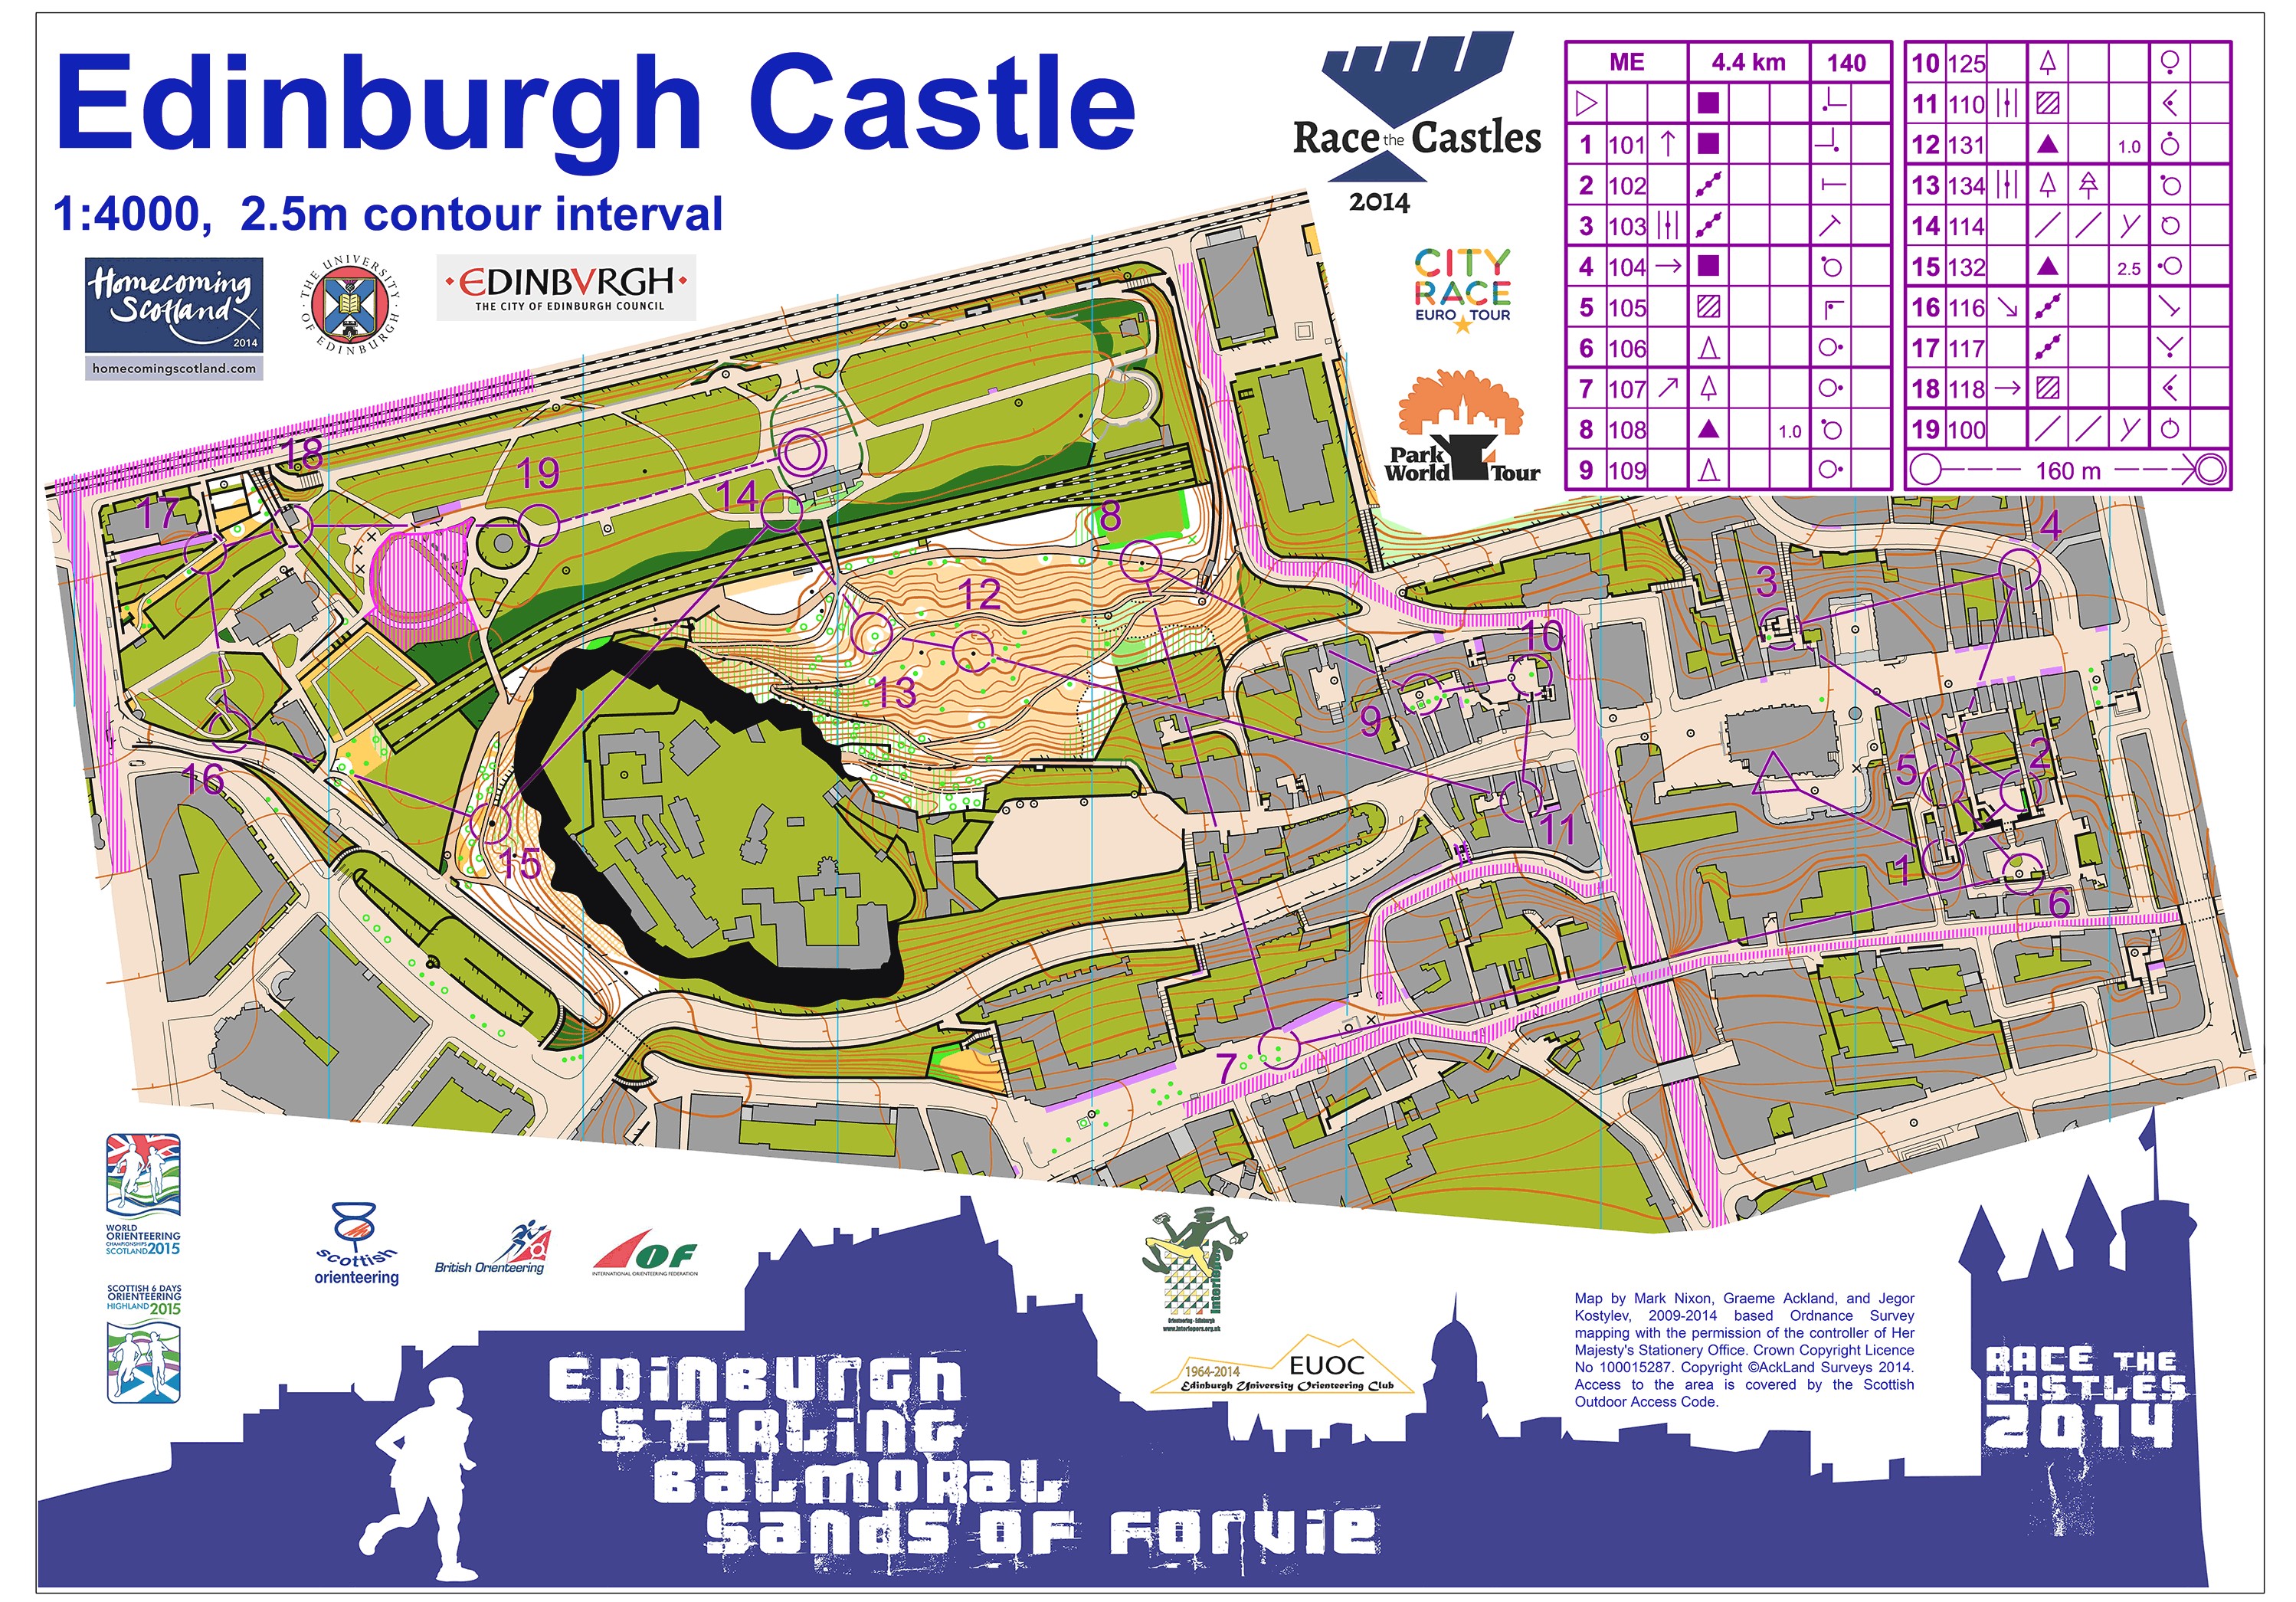 Race the castles1 (11.10.2014)